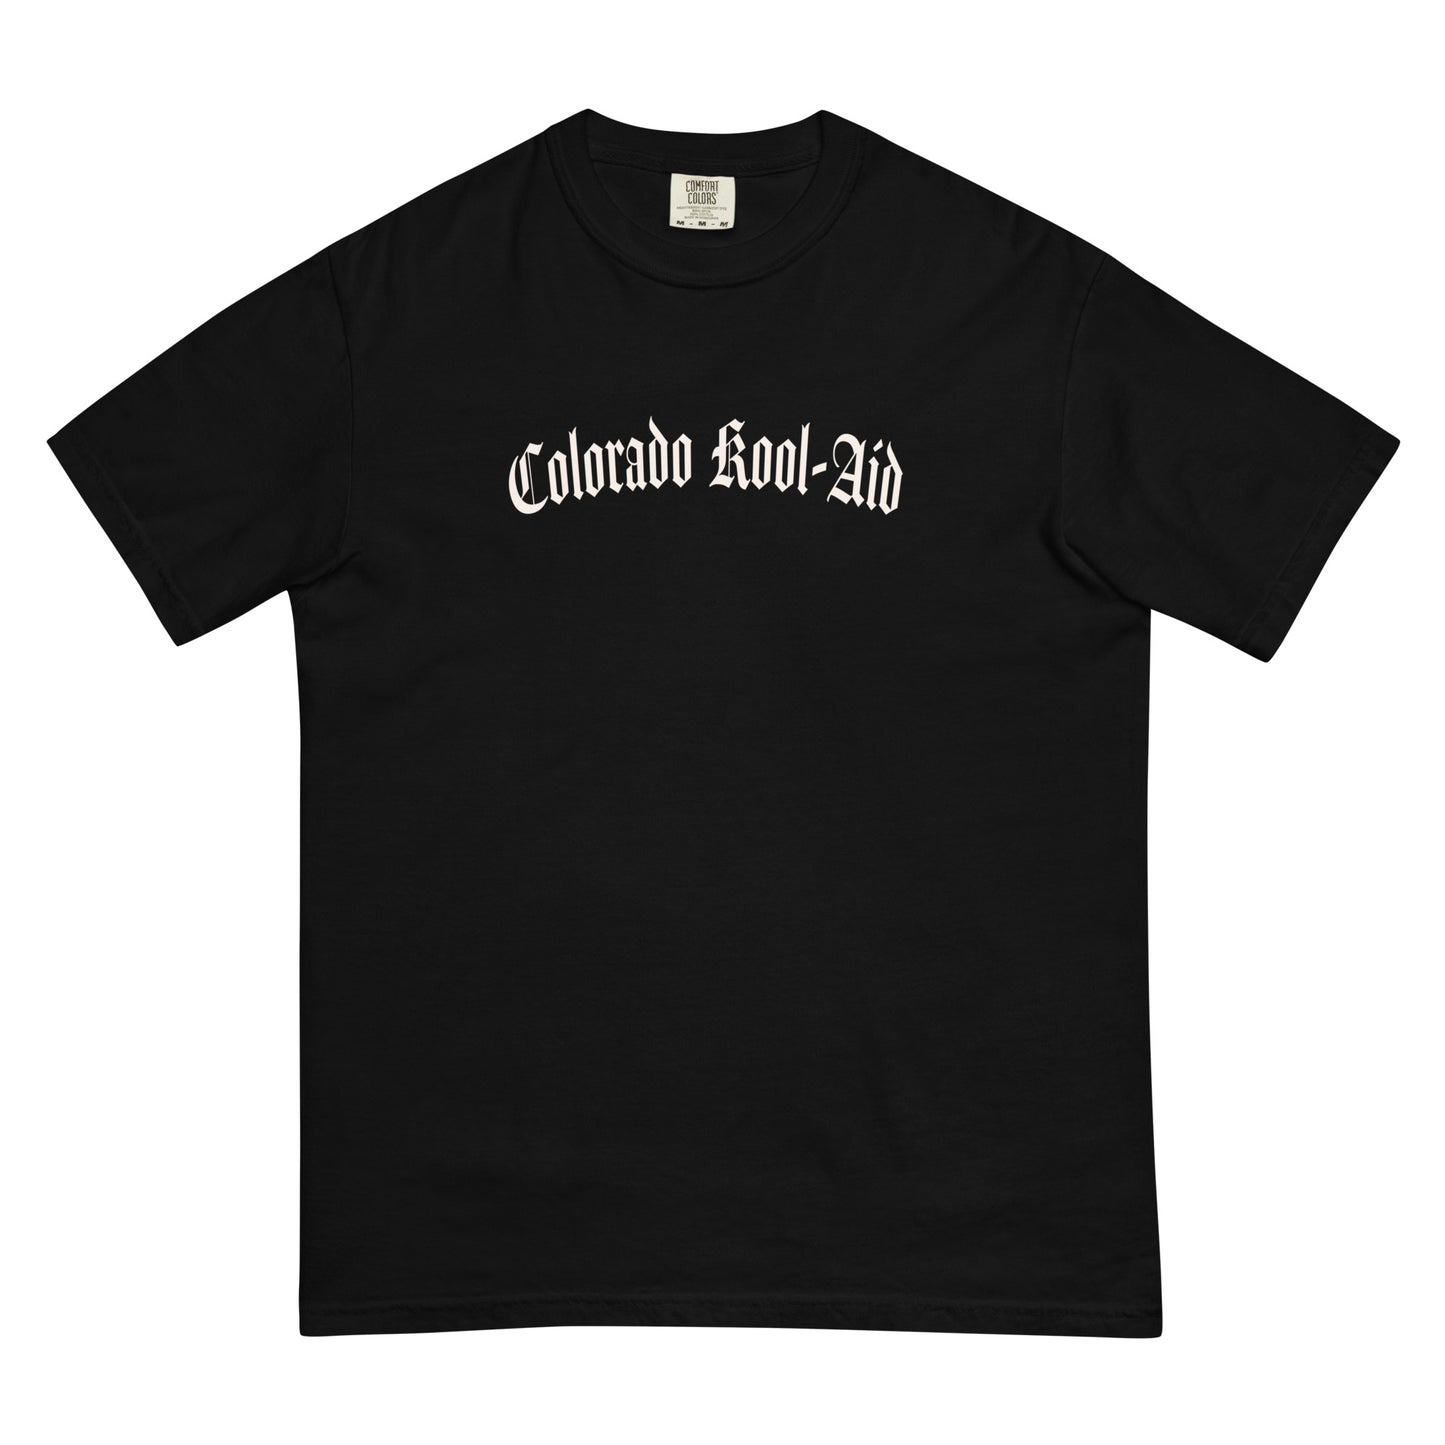 Colorado Kool-Aid T-Shirt